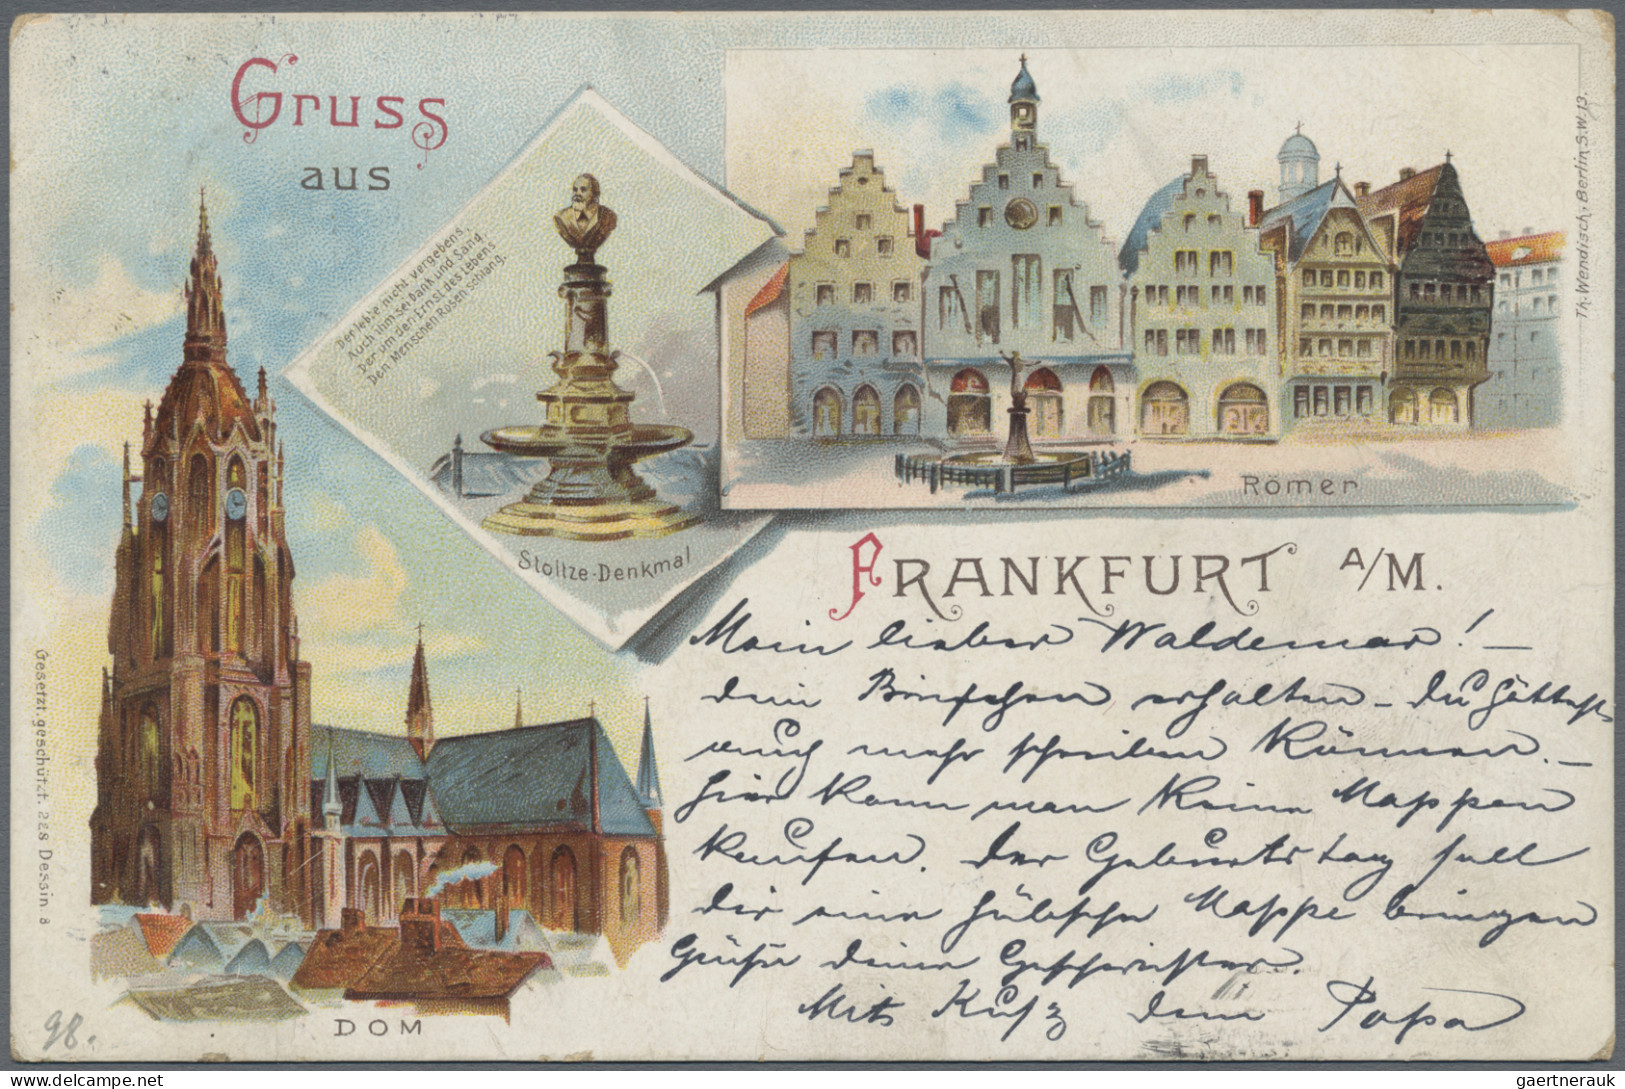 Ansichtskarten: Deutschland: 1900-1940 ca.: Rund 500 Ansichtskarten aus Deutschl